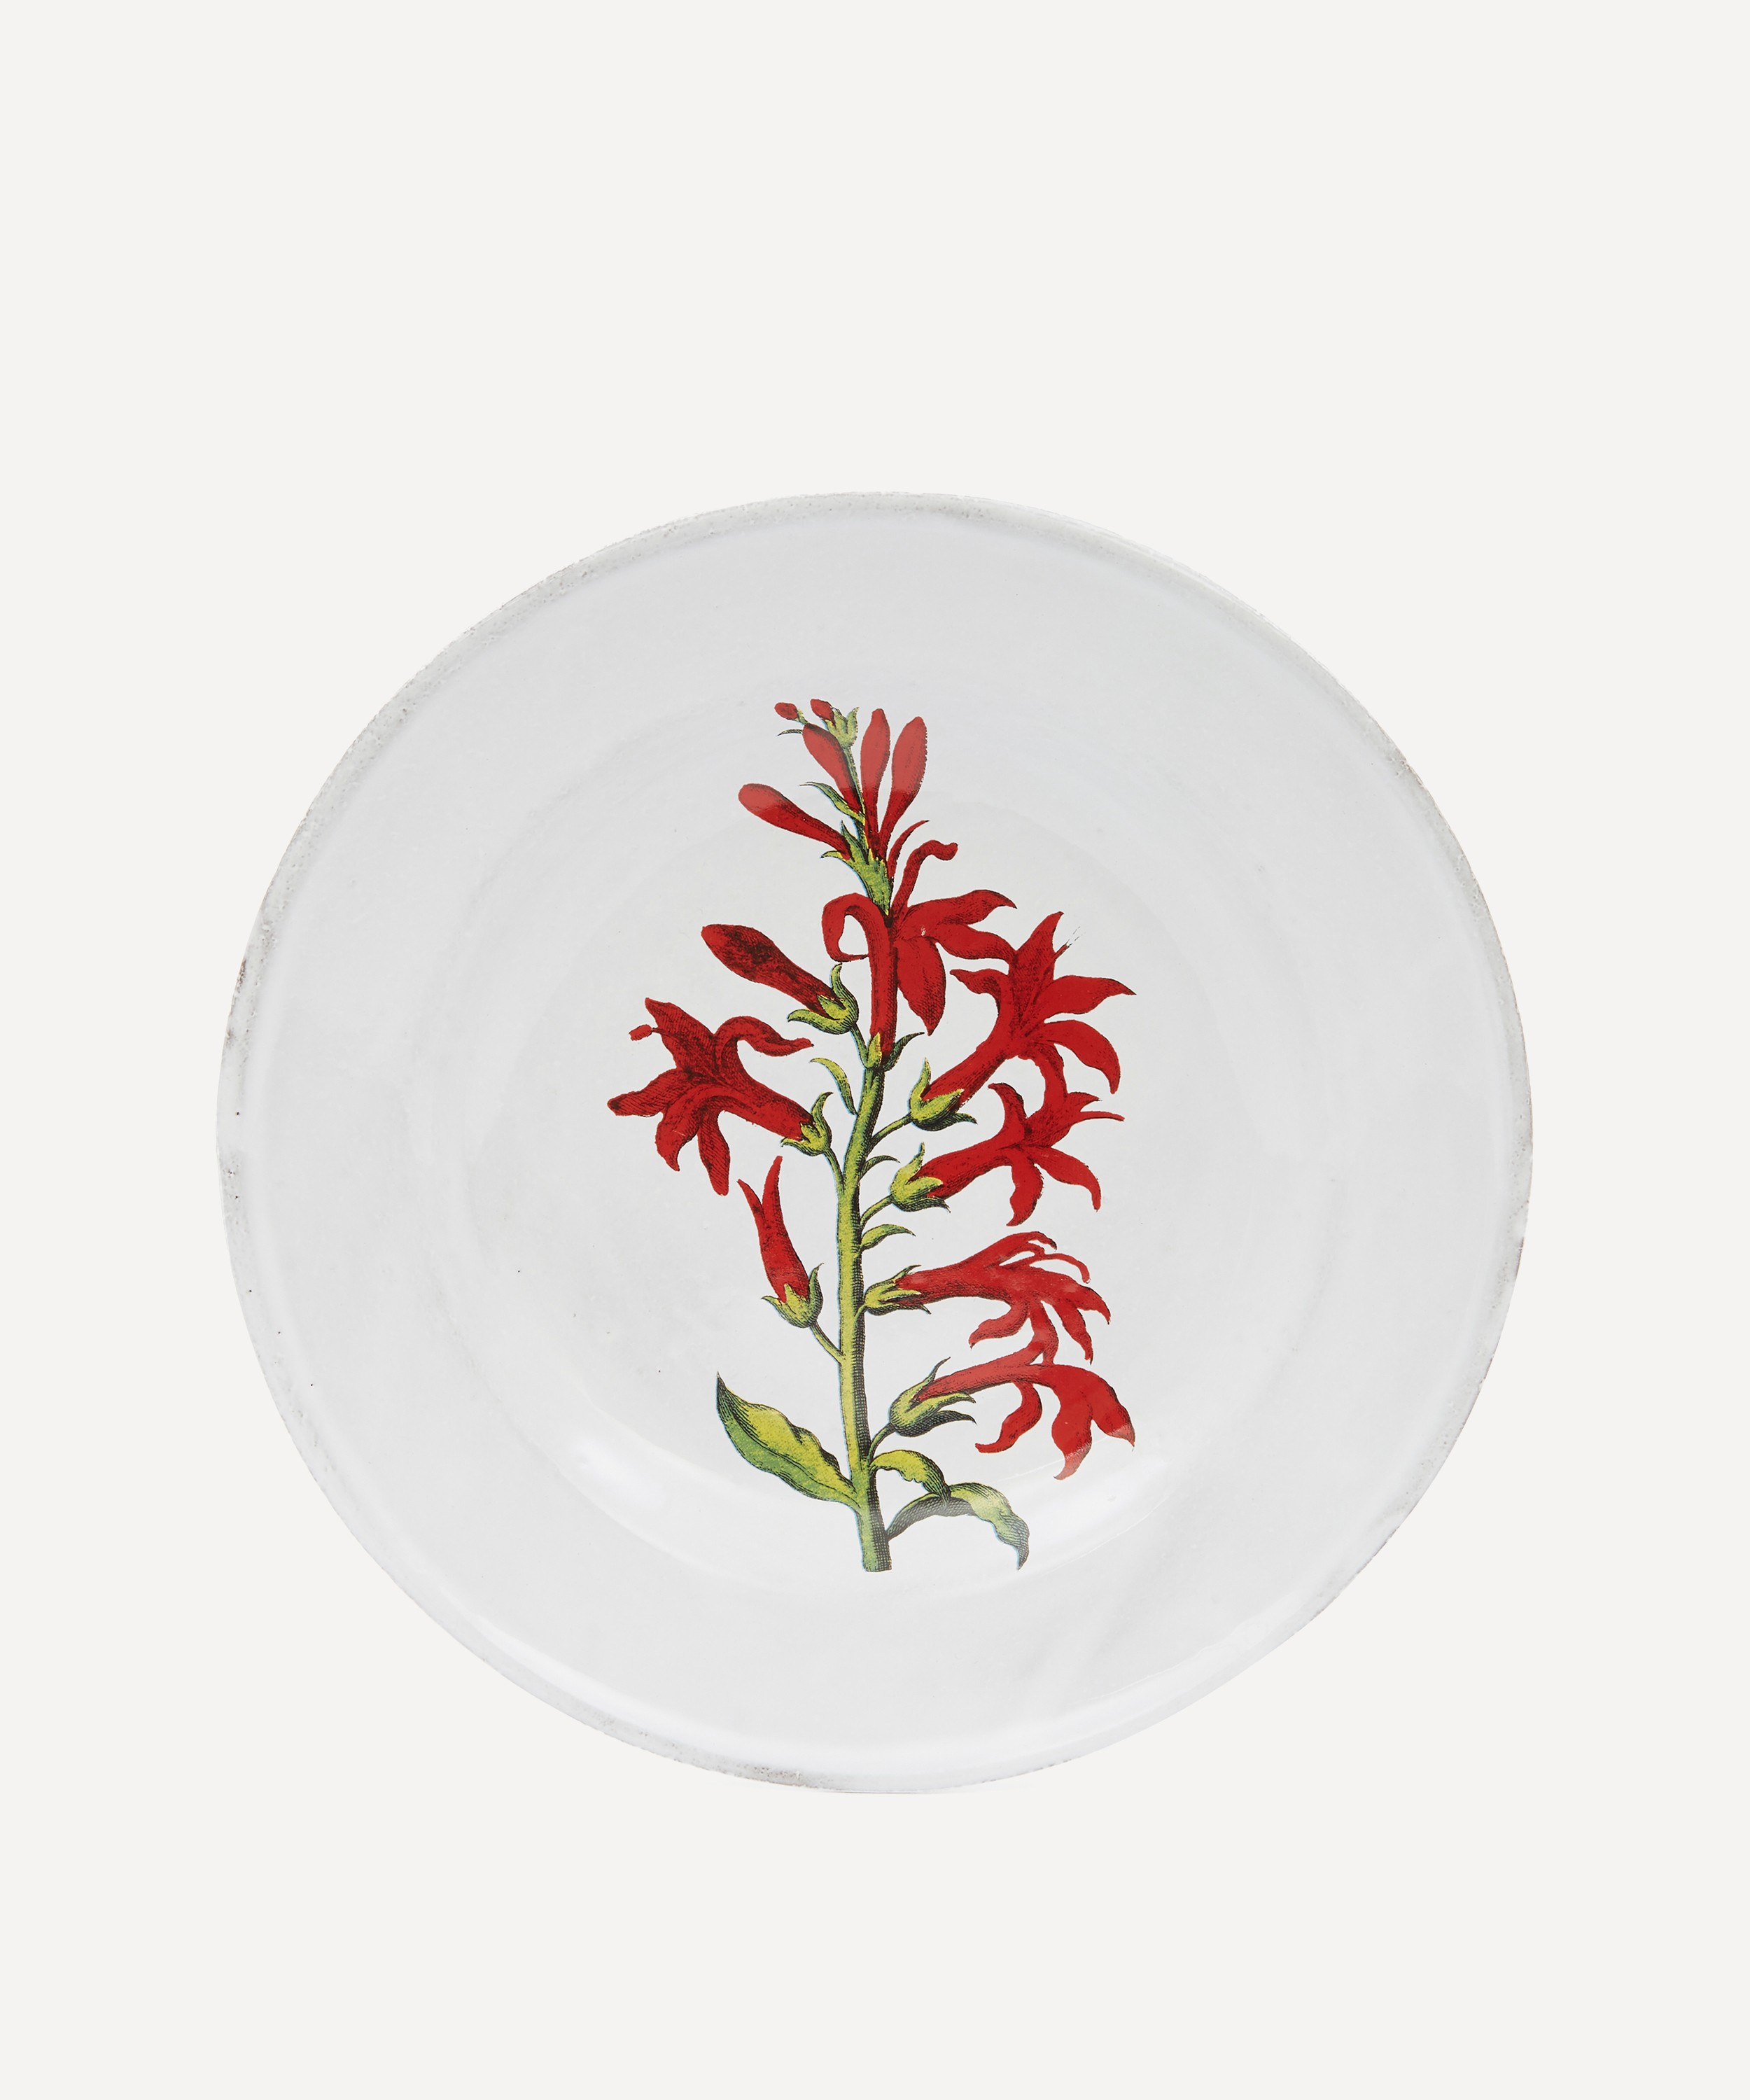 Astier de Villatte - Cardinal Flower Soup Plate